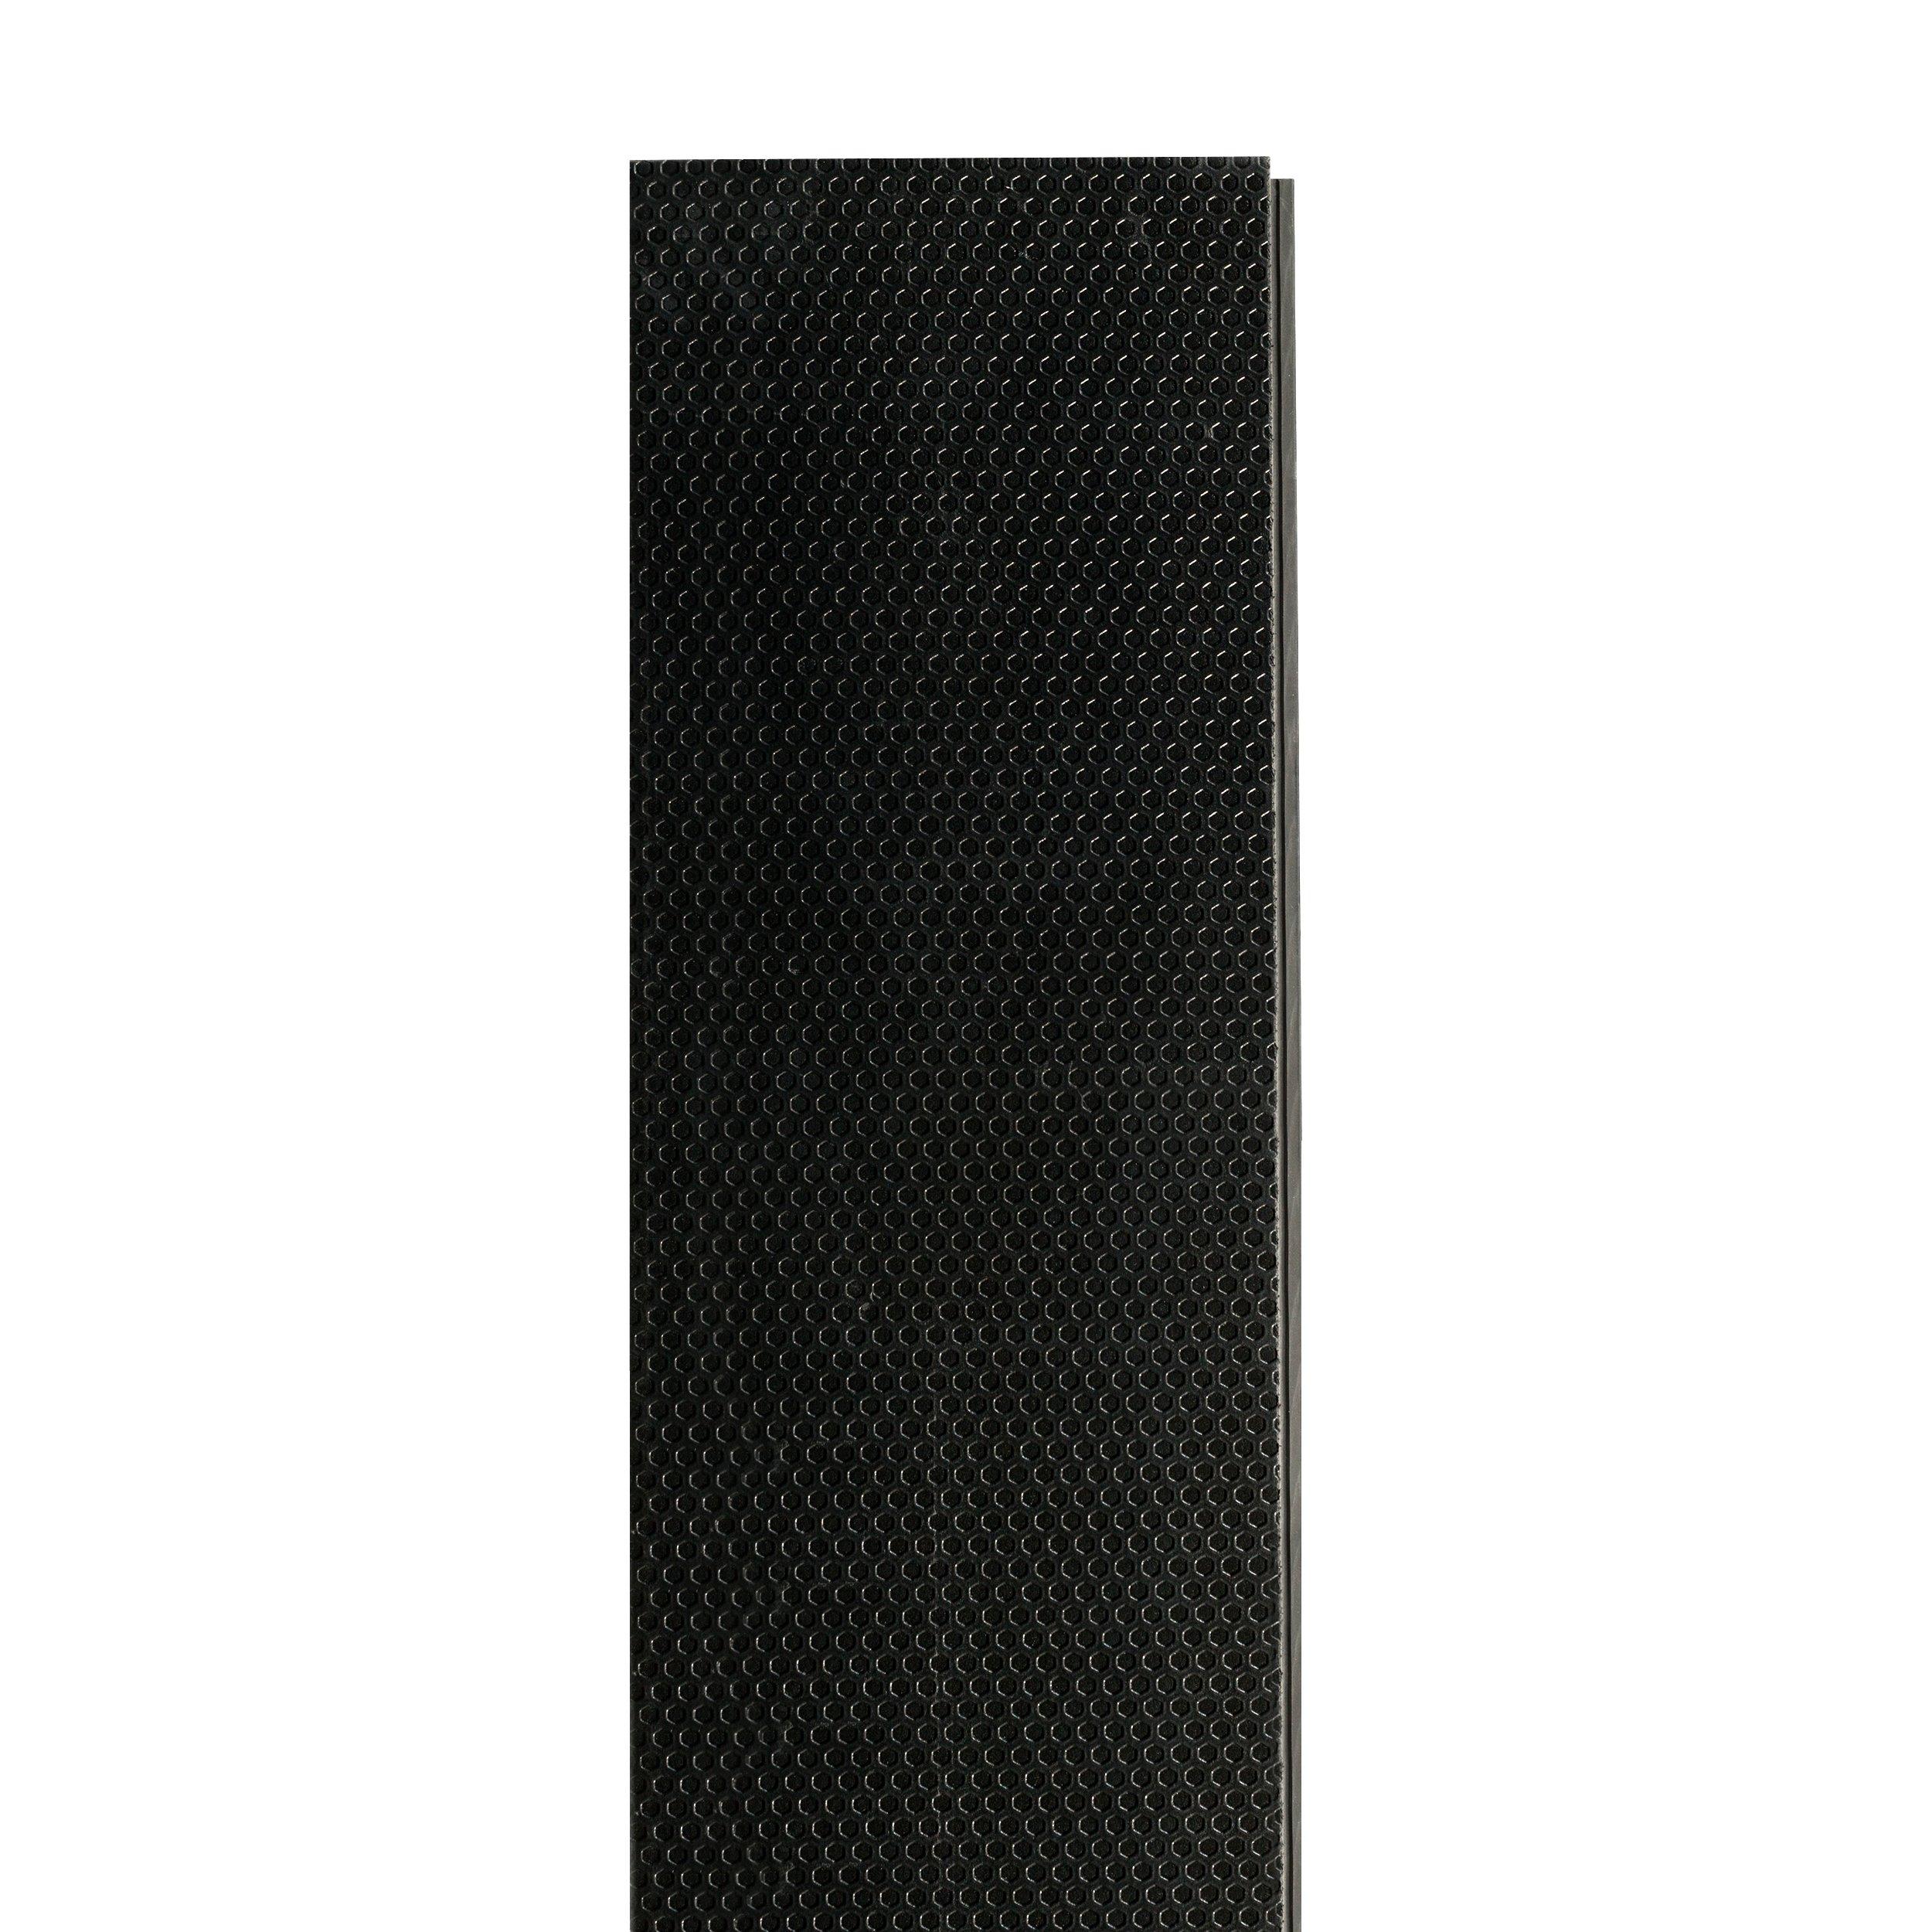 Oakhaven Maple Multi Length Rigid Core Luxury Vinyl Plank - Foam Back